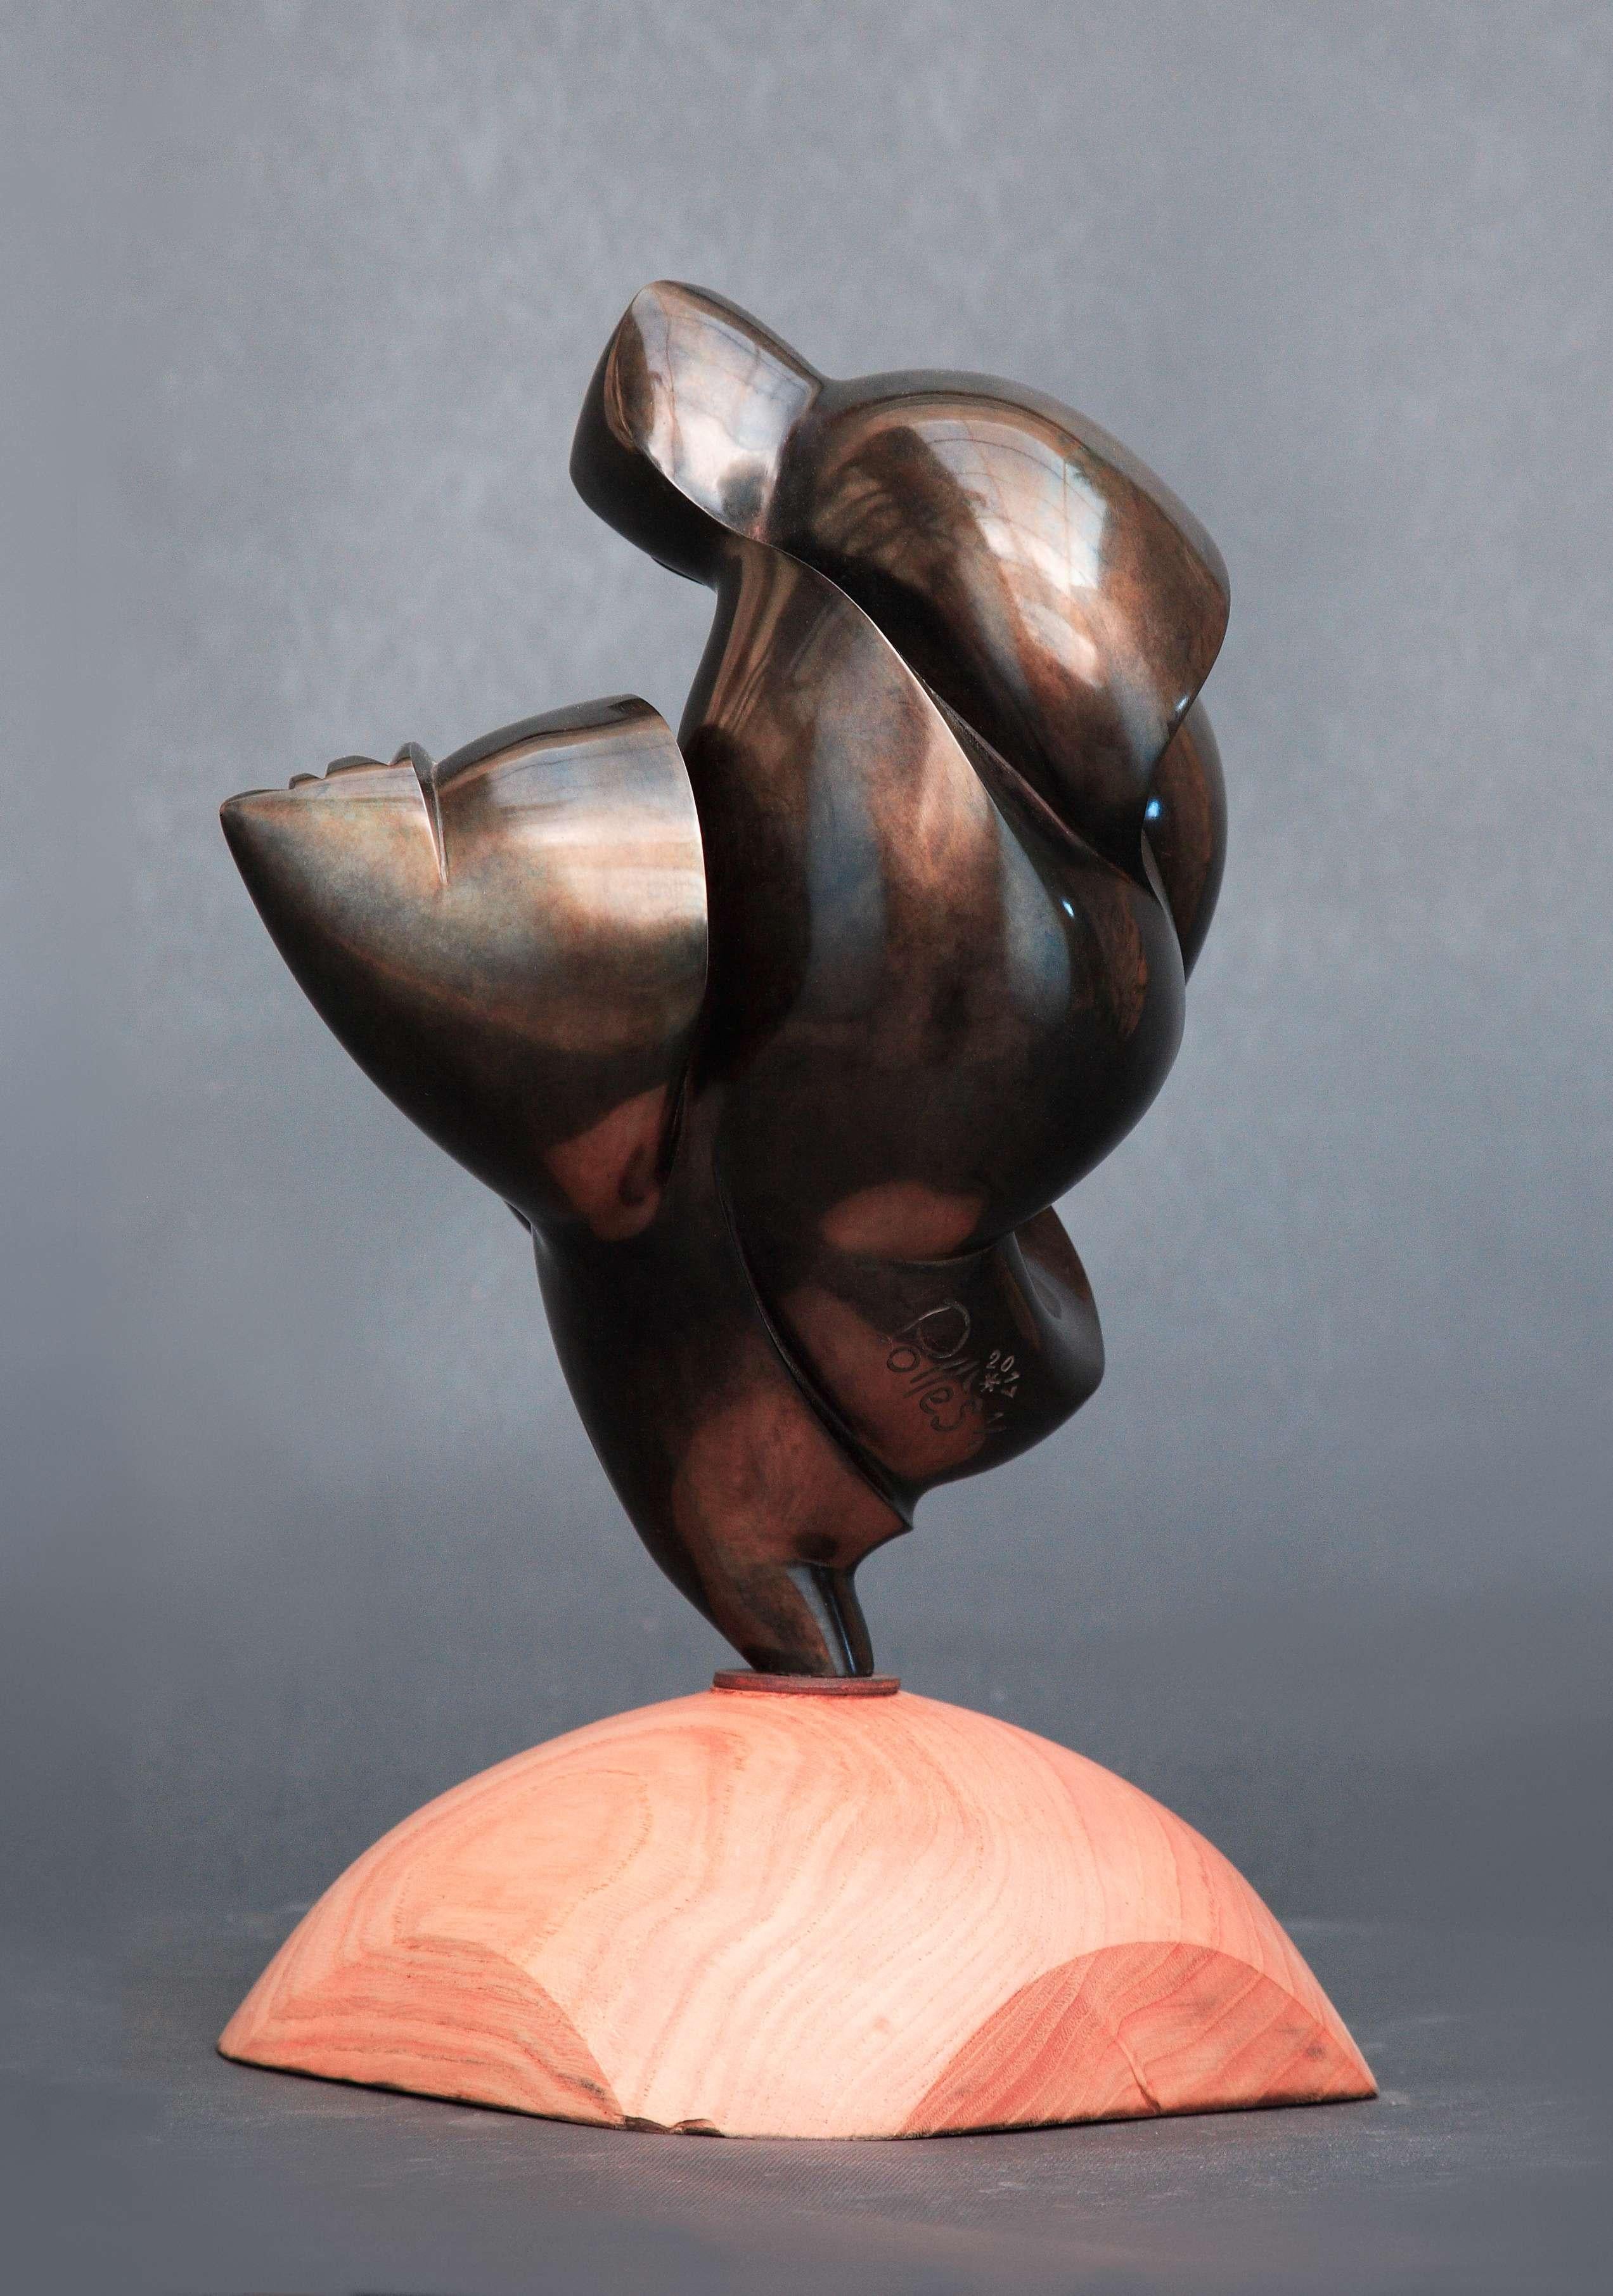 Pollès - Bronze Sculpture - Thelxinoé - Gold Figurative Sculpture by Dominique Polles 